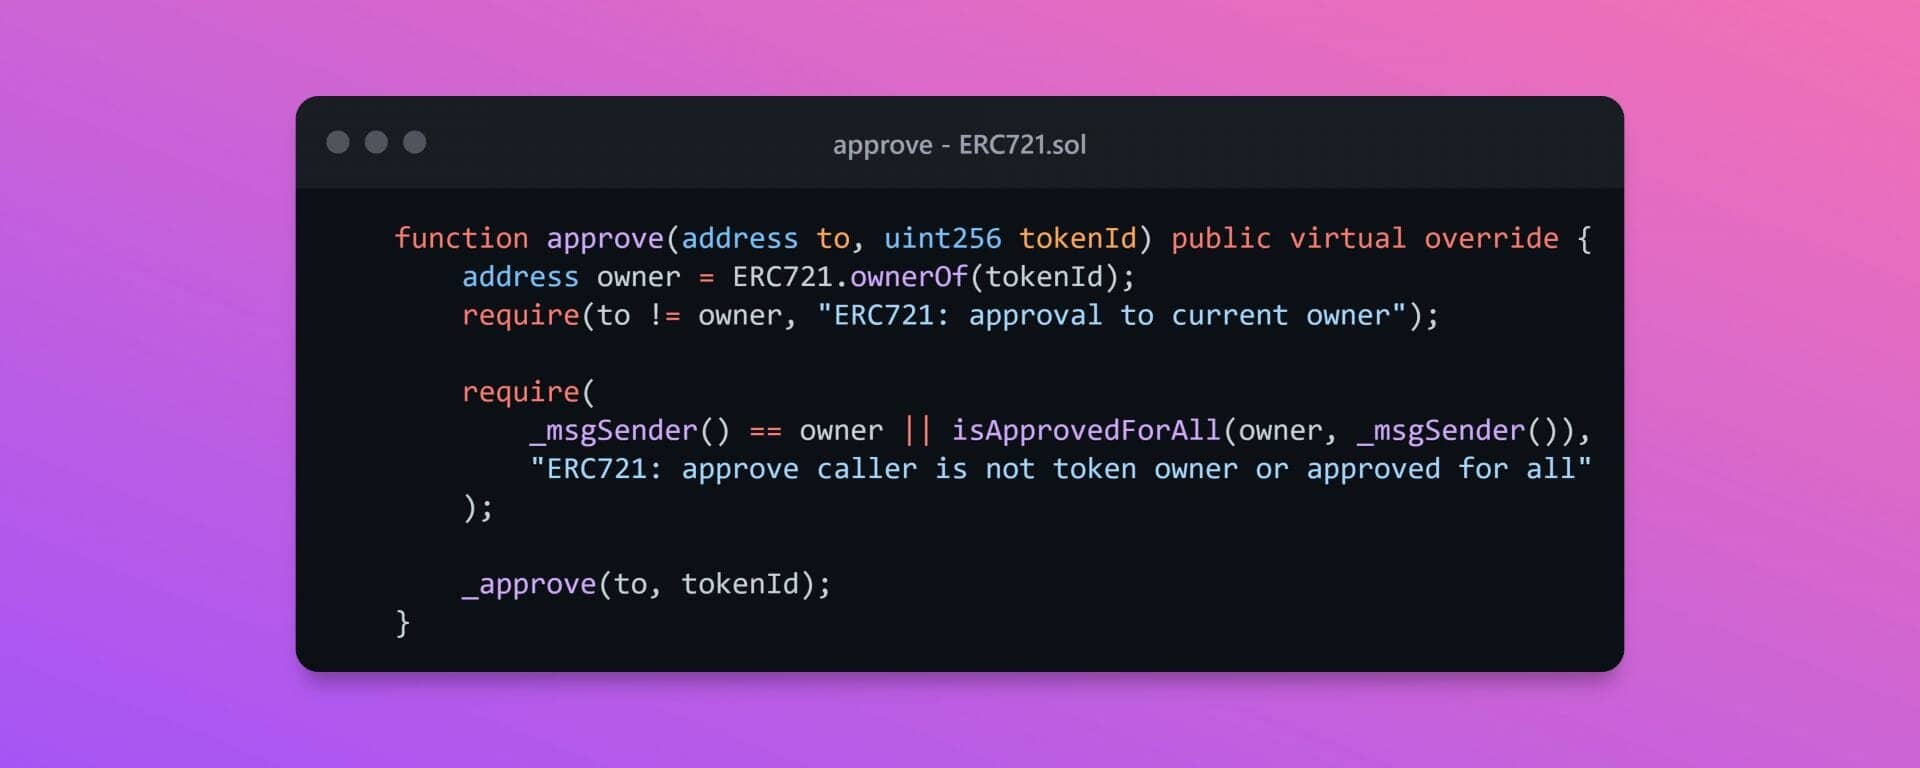 Extrait du code officiel de la norme ERC721 d'Openzeppelin, il définit la fonction "approve" qui est différente de celle de la norme ERC20 car elle permet de définir l'accès à un NFT précis.